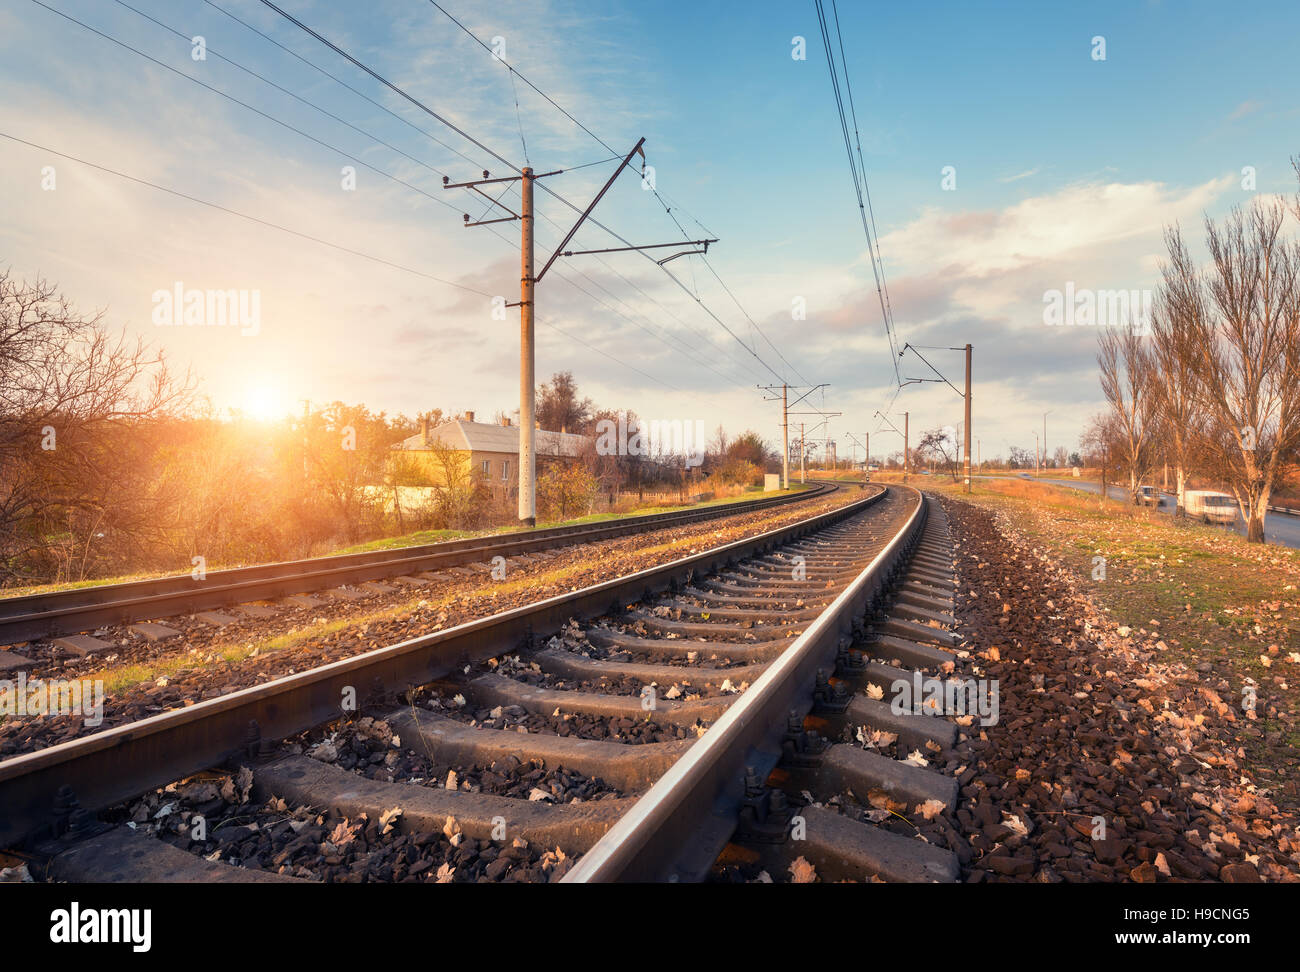 Bahnhof gegen schönen Himmel bei Sonnenuntergang. Industrielandschaft mit Eisenbahn, blauer Himmel mit Wolken, Sonne, Bäume und Rasen. Eisenbahnknotenpunkt Stockfoto